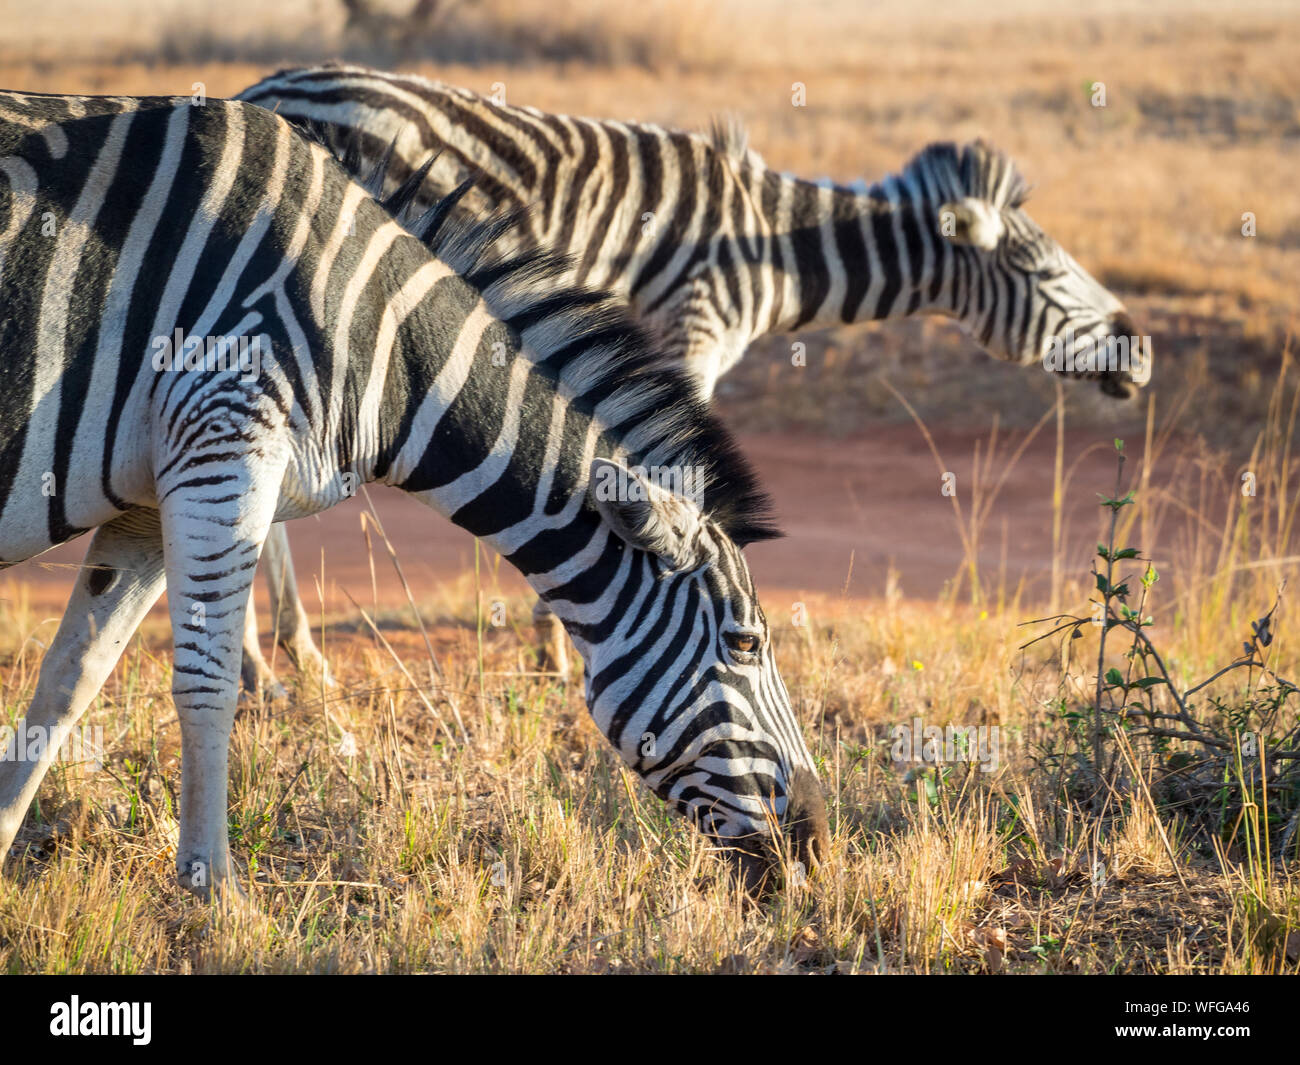 Closeup portrait of zebras in Mlilwane Wildlife Sanctuary, Swaziland, Southern Africa. Stock Photo